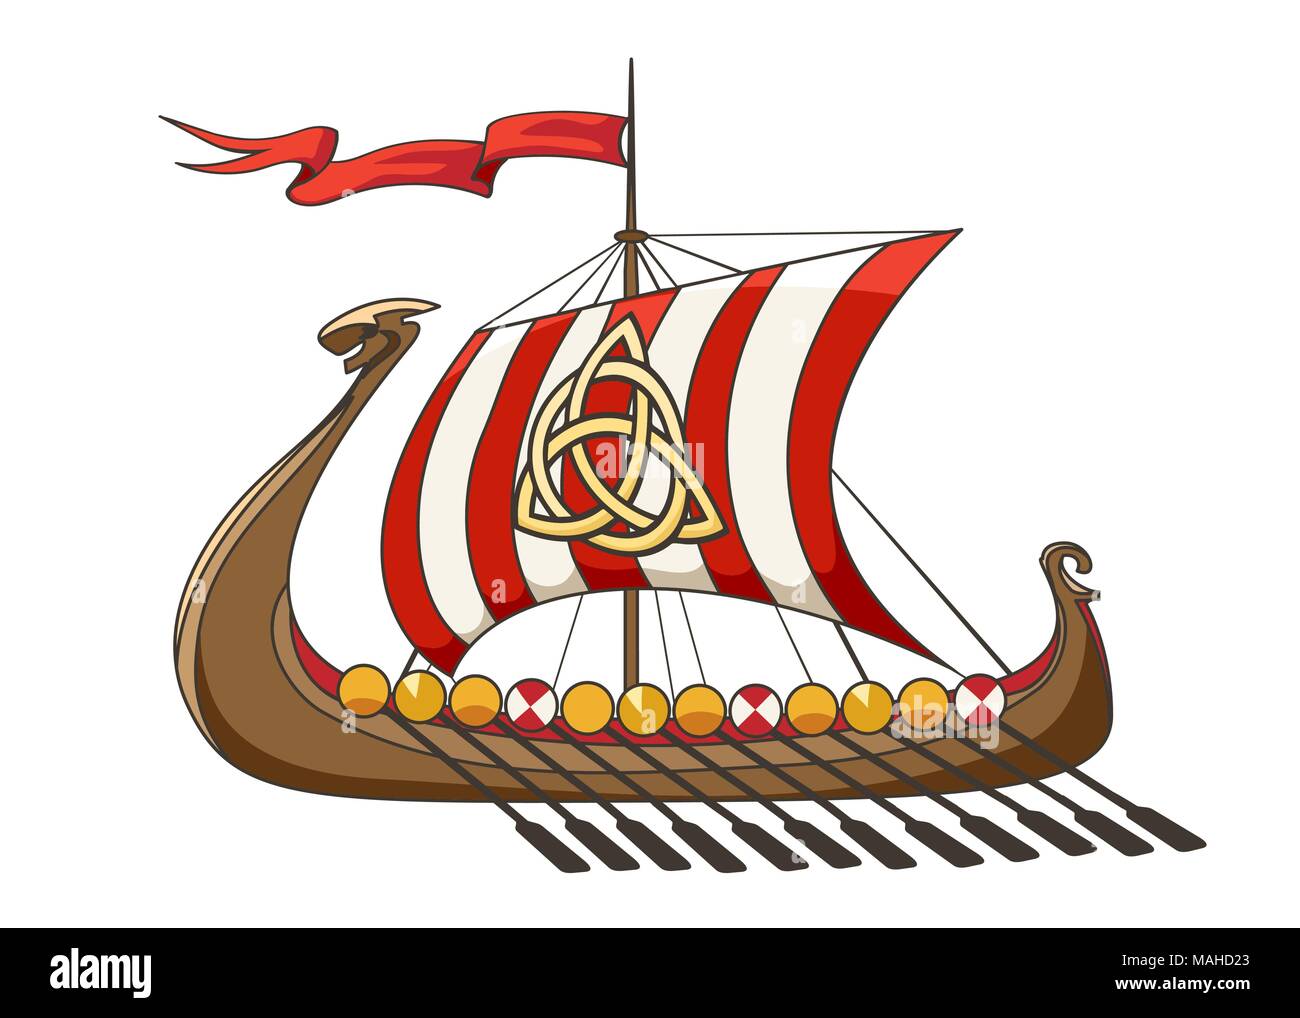 Drakkar medieval Viking Battle Ship in cartoon style. Vector Illustration. Stock Vector